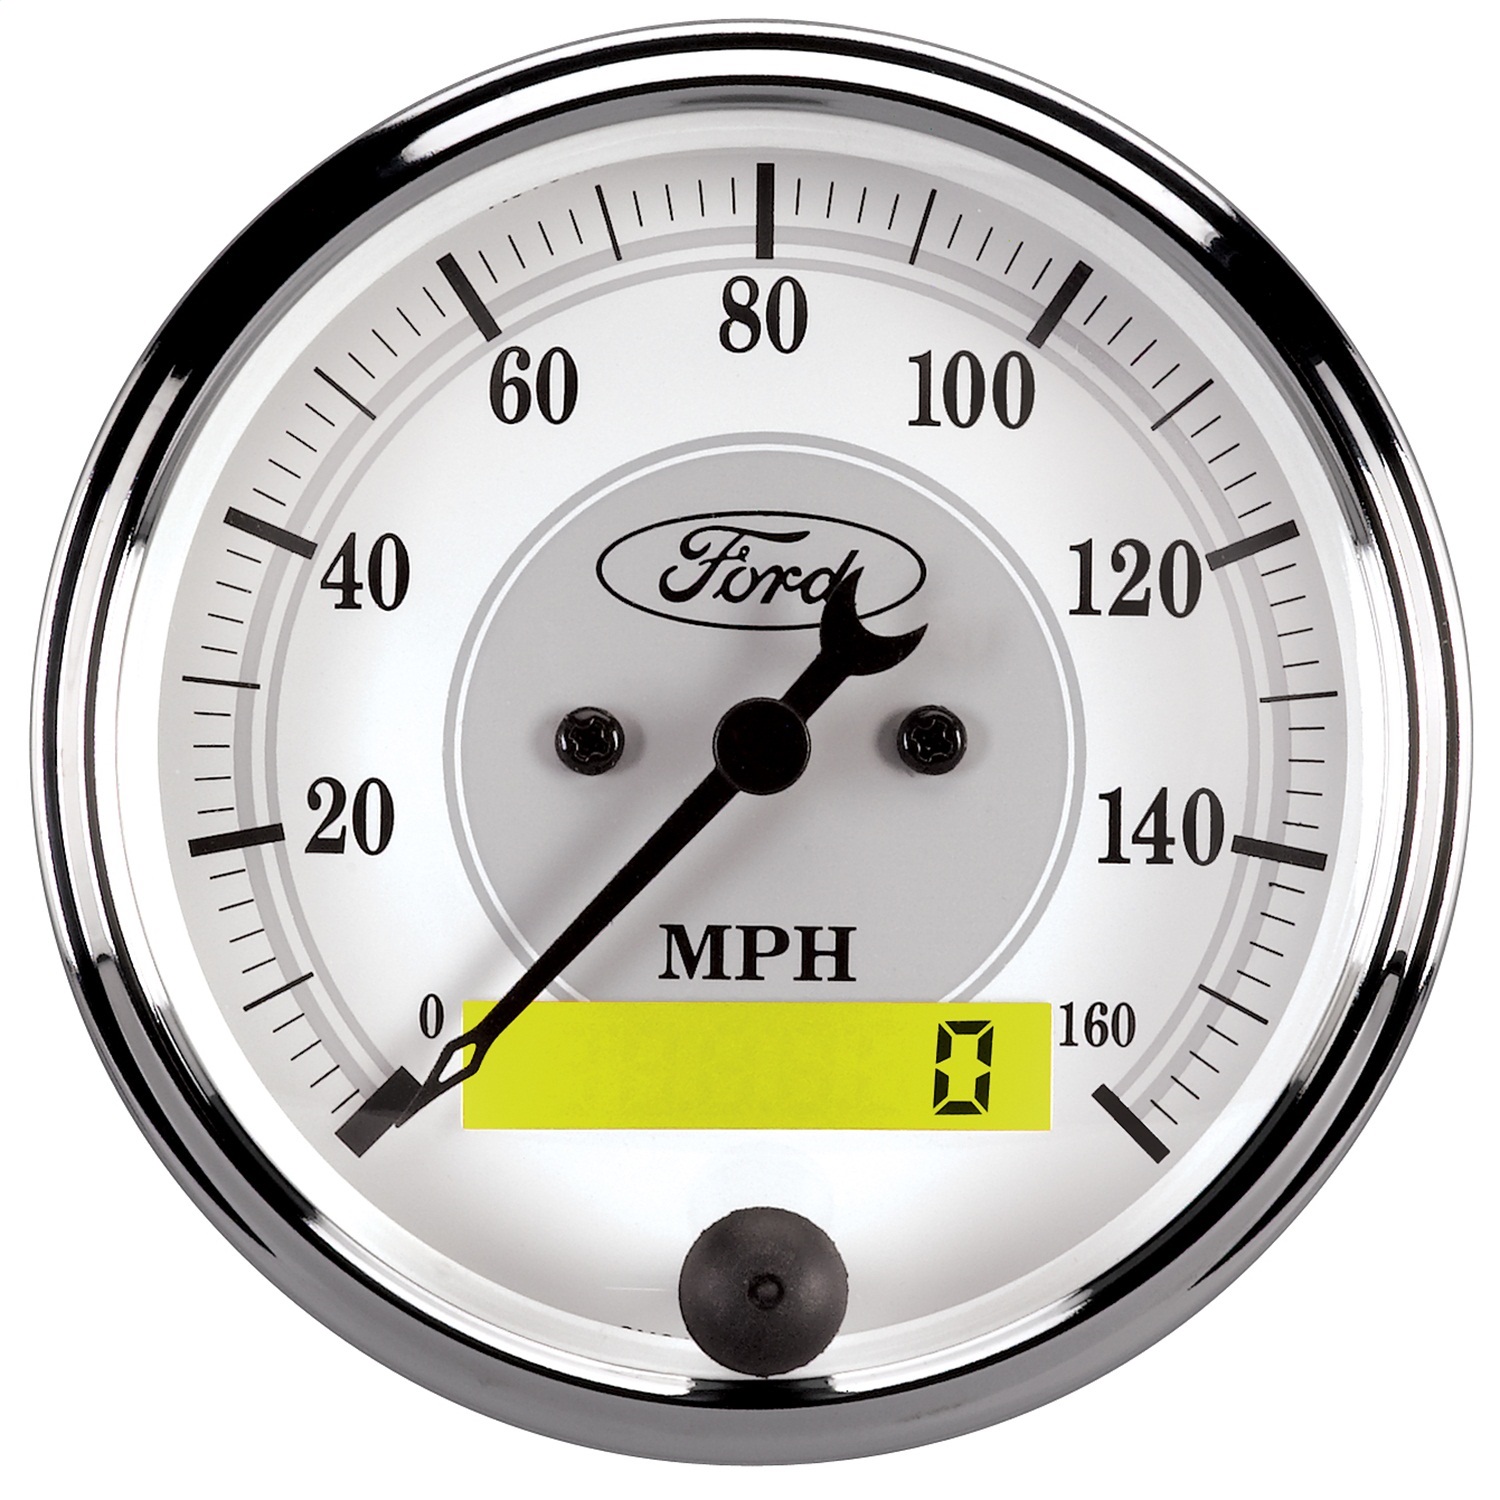 Auto Meter Auto Meter 880087 Ford Racing Series; 5 Gauge Set; Fuel/Oil/Speedo/Volt/Water